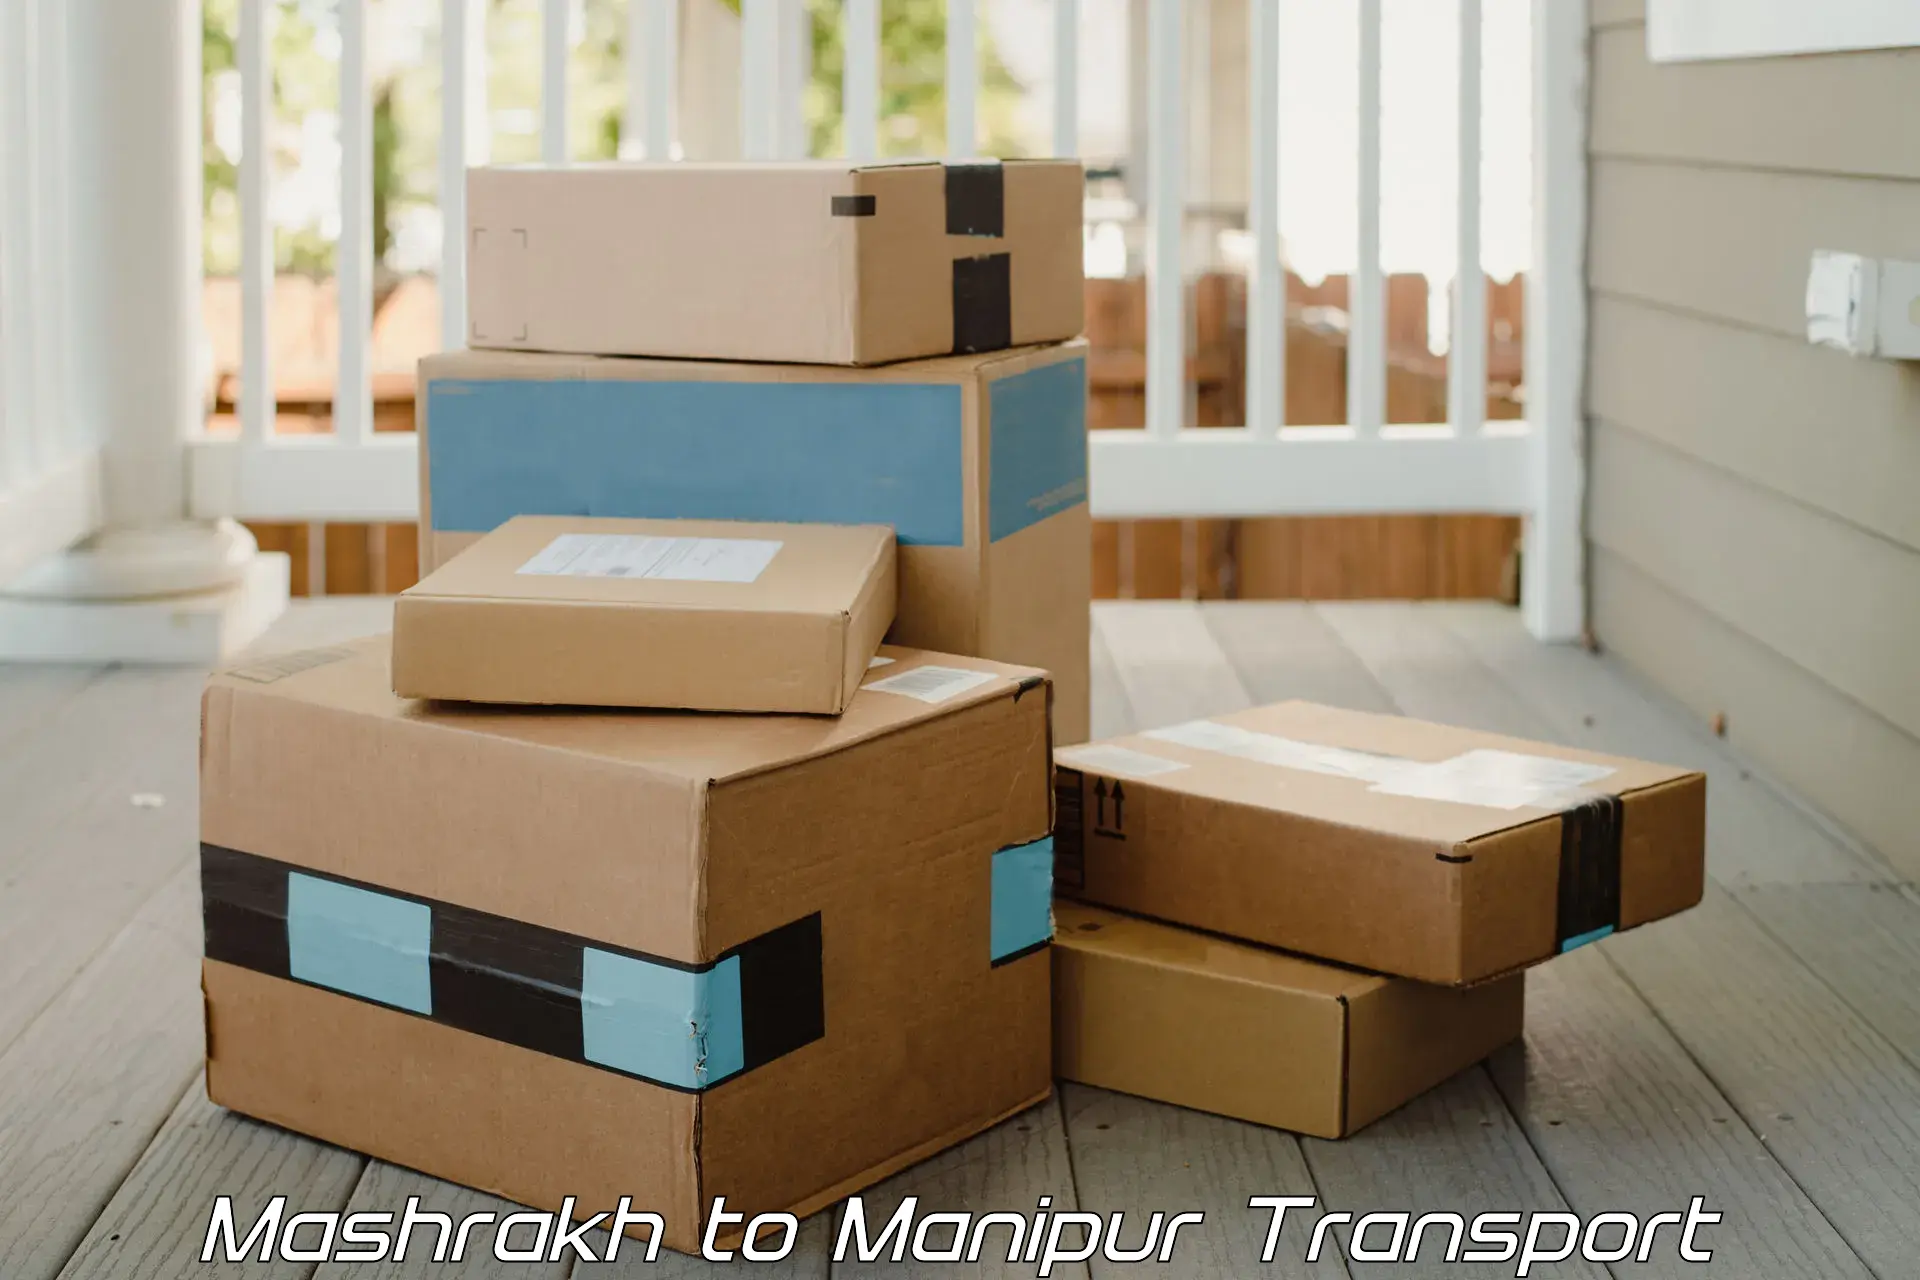 Online transport booking Mashrakh to Kakching